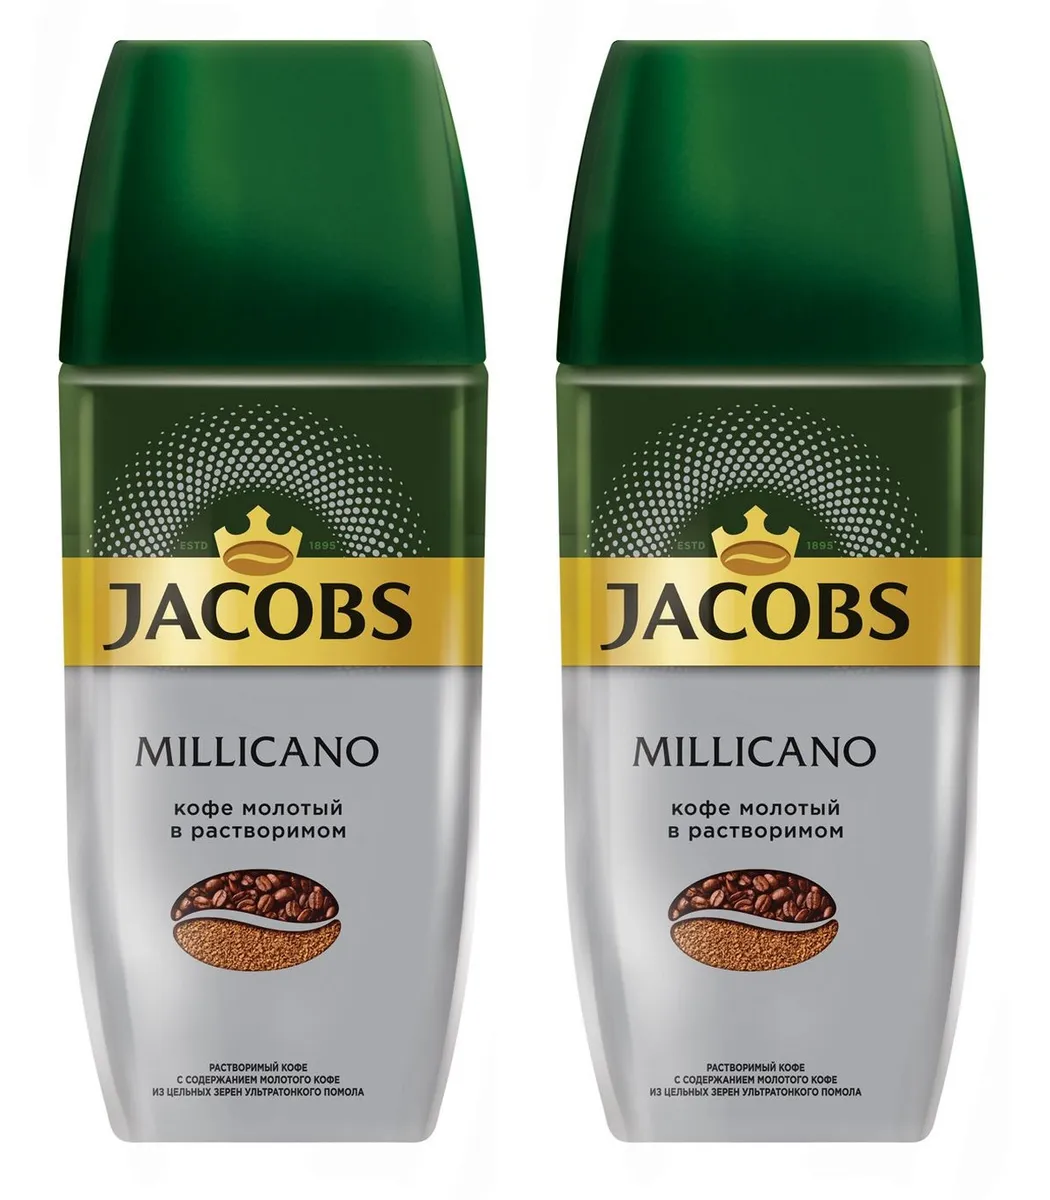 Кофе растворимый миликано. Jacobs Millicano 90г. Кофе Jacobs Monarch Millicano растворимый 95г. Джакобс Миликано 90. Джакобс Миликано кофе молотый 90г.